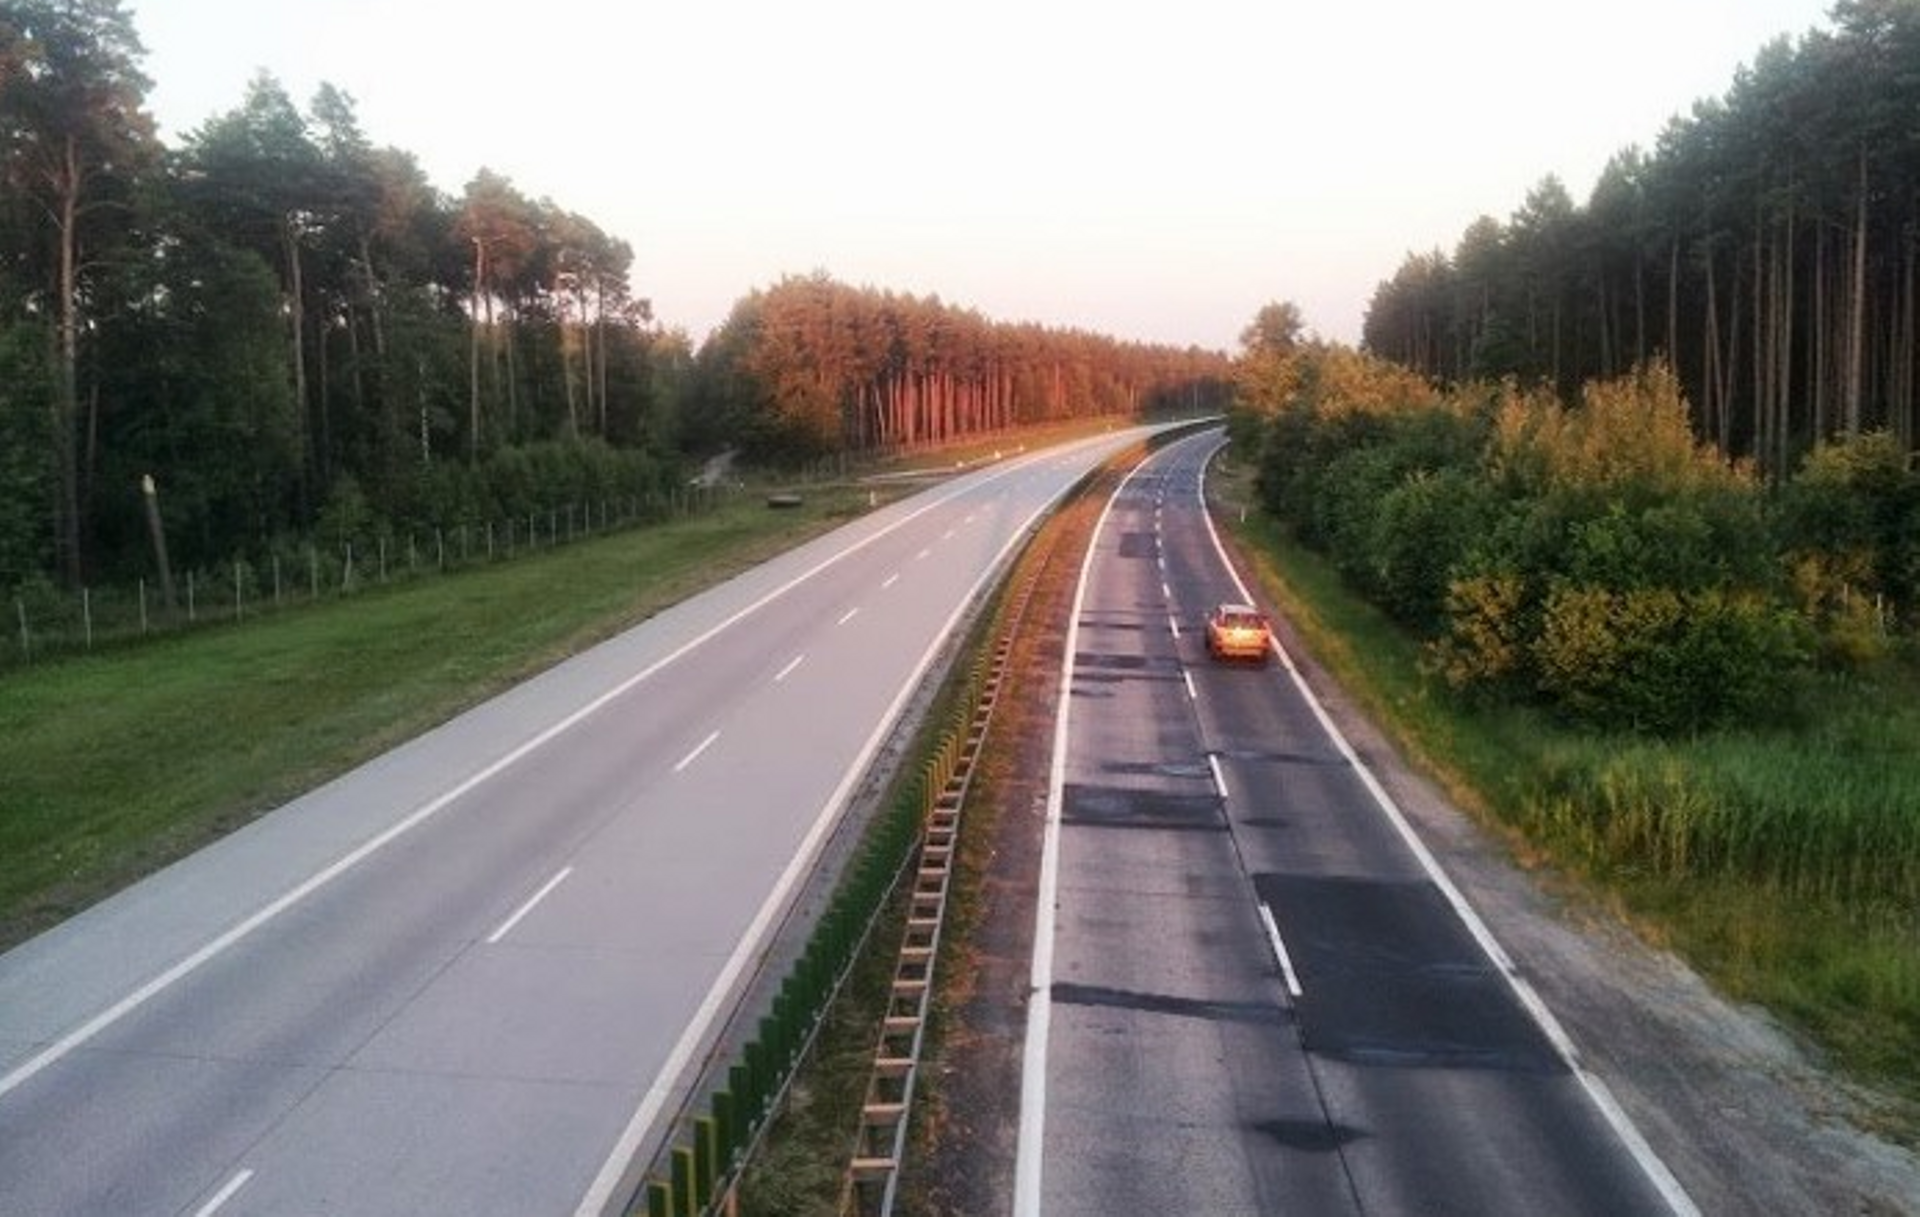  Będzie generalna przebudowa najbardziej zniszczonego fragmentu autostrady A18 (DK18): Olszyna-Golnice